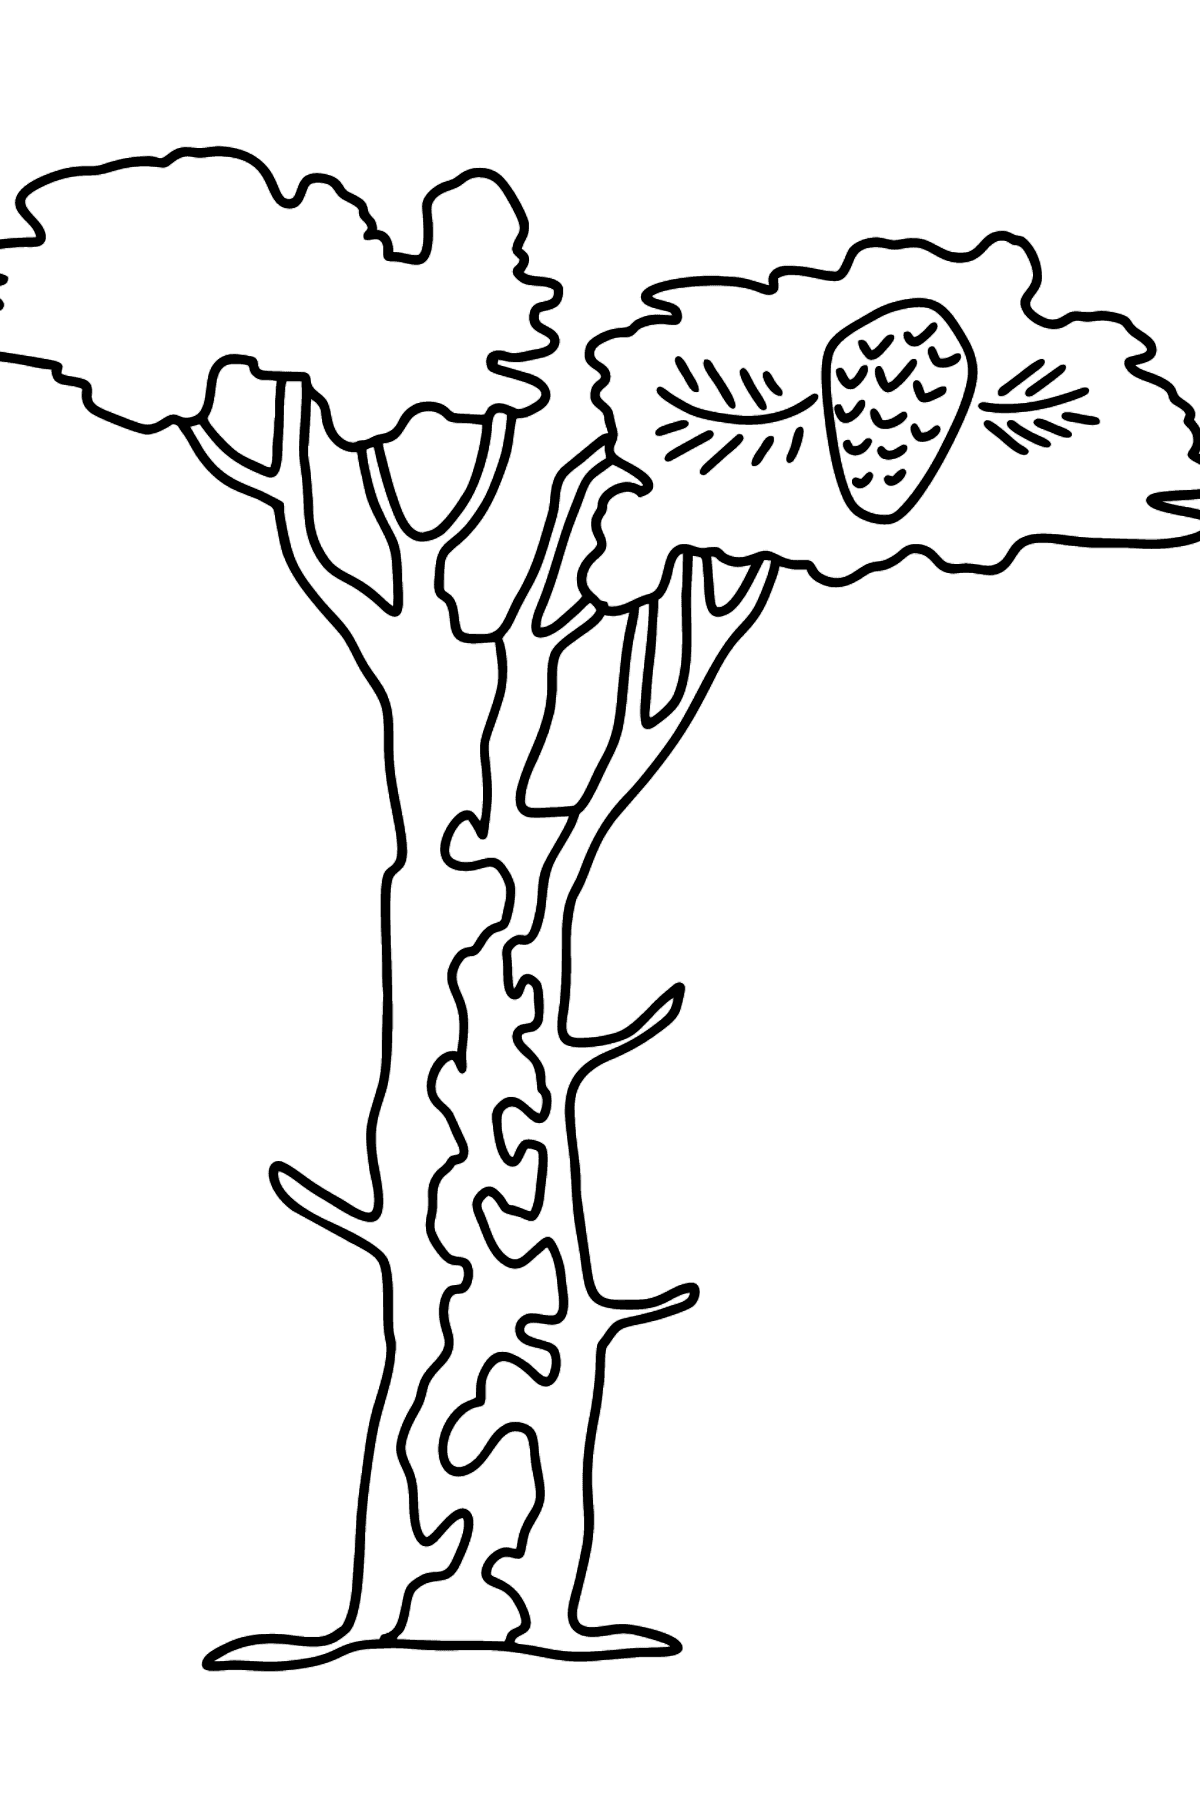 Dibujo de árbol de cedro para colorear - Dibujos para Colorear para Niños